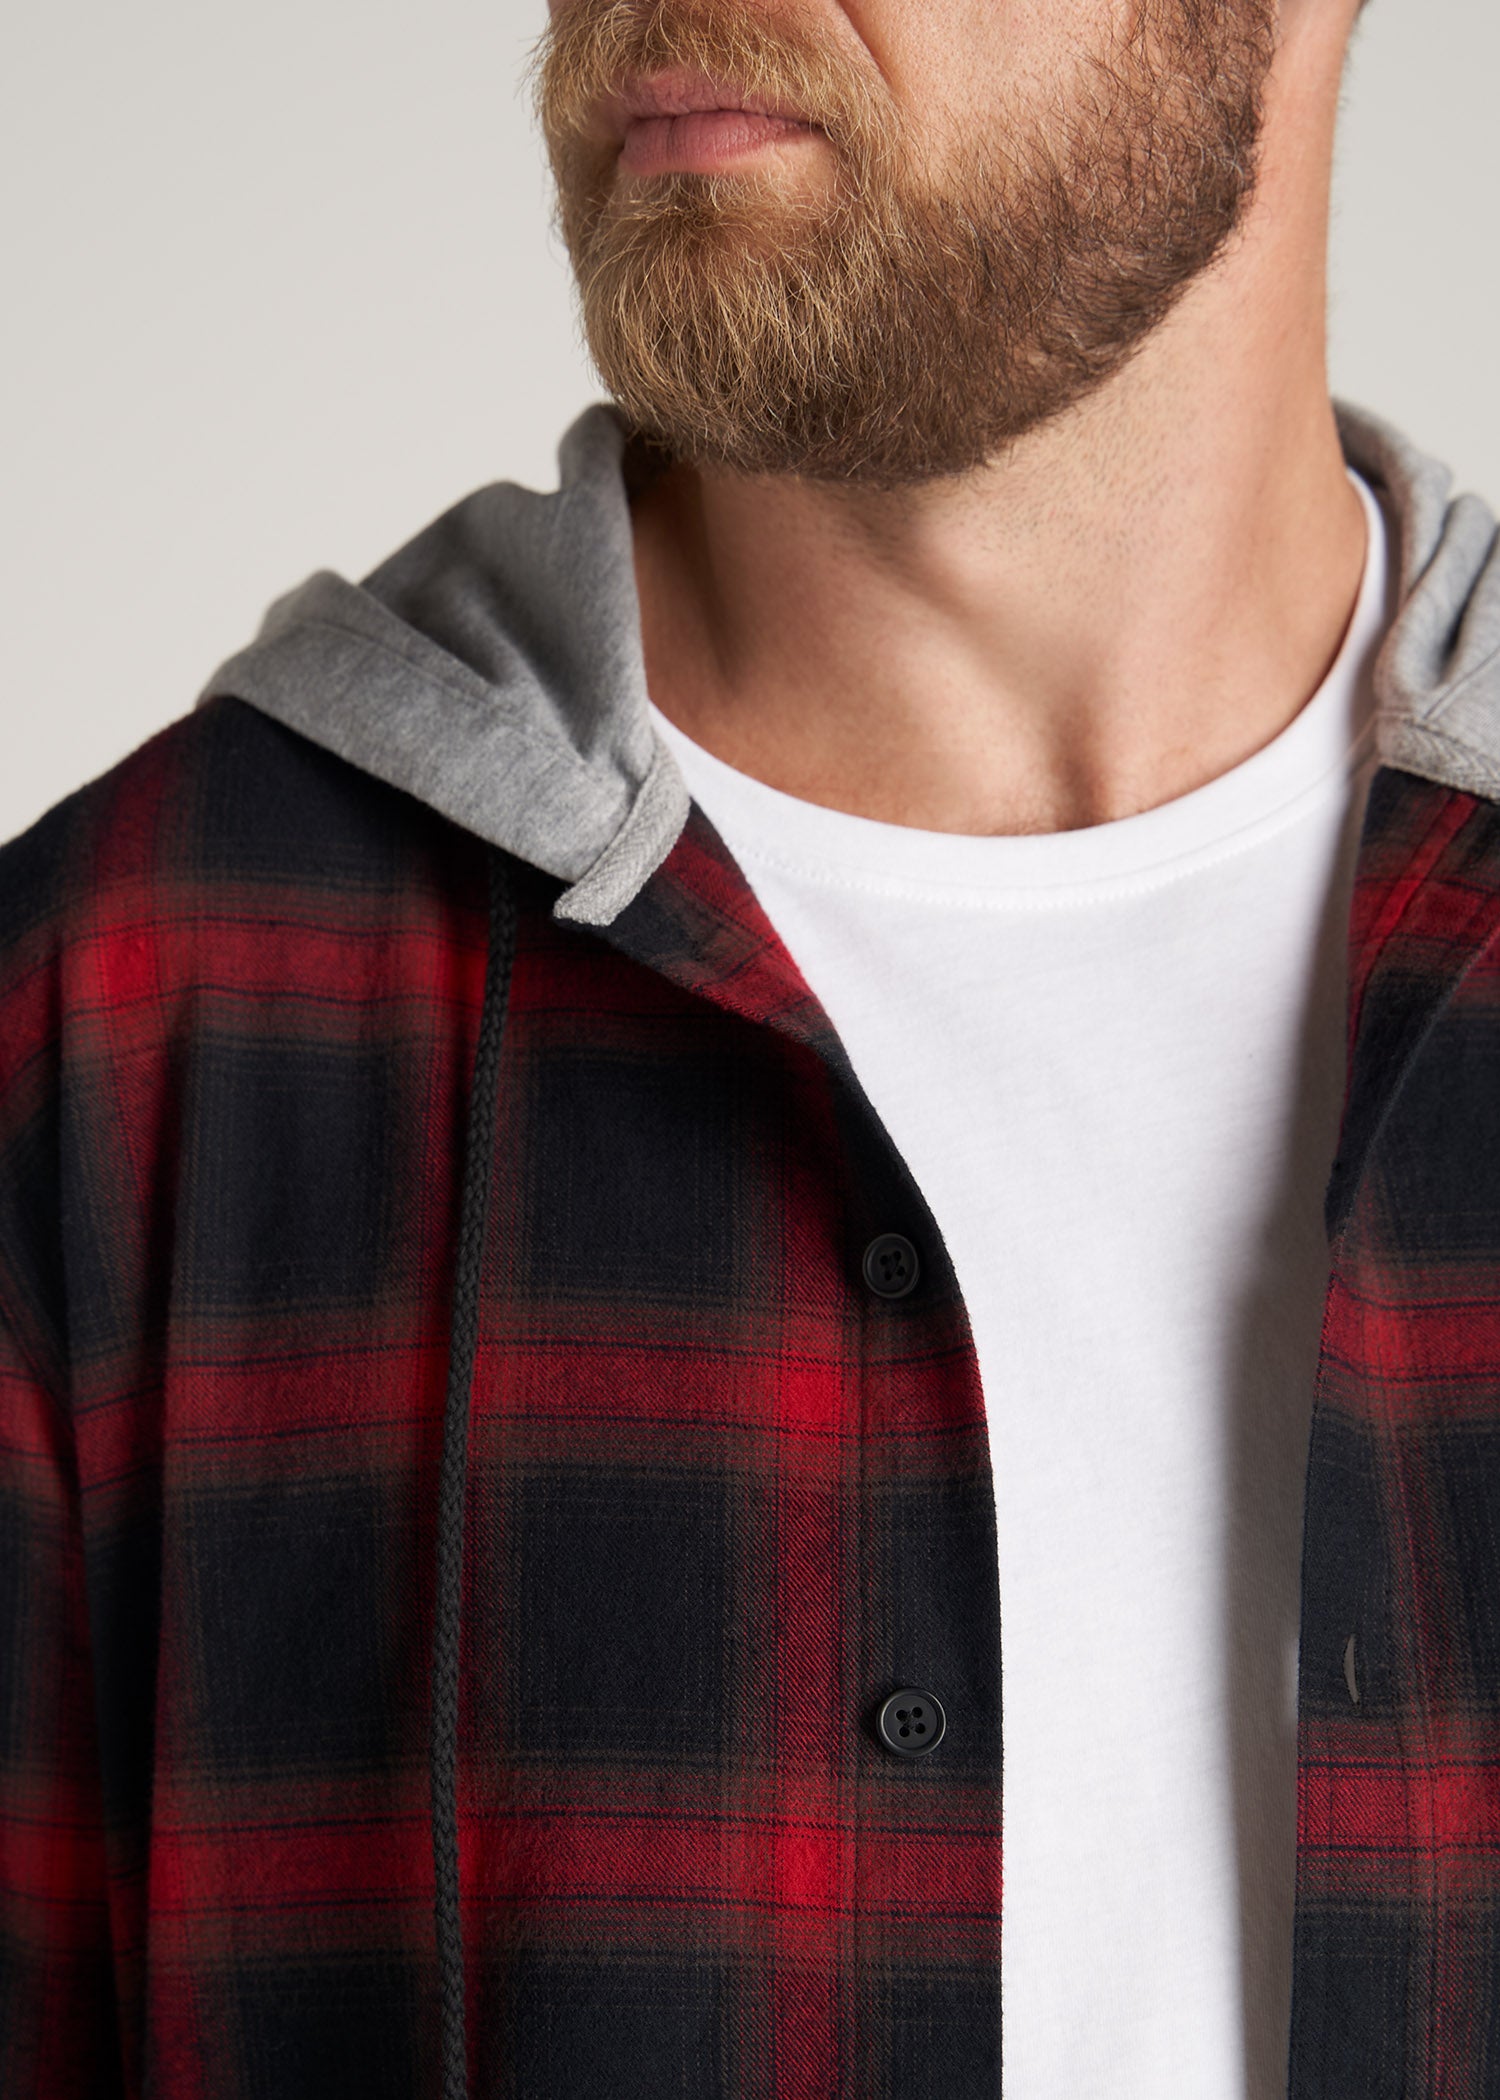     American-Tall-Men-LJ-Hooded-FlannelShirt-BlackRedPlaid-detail